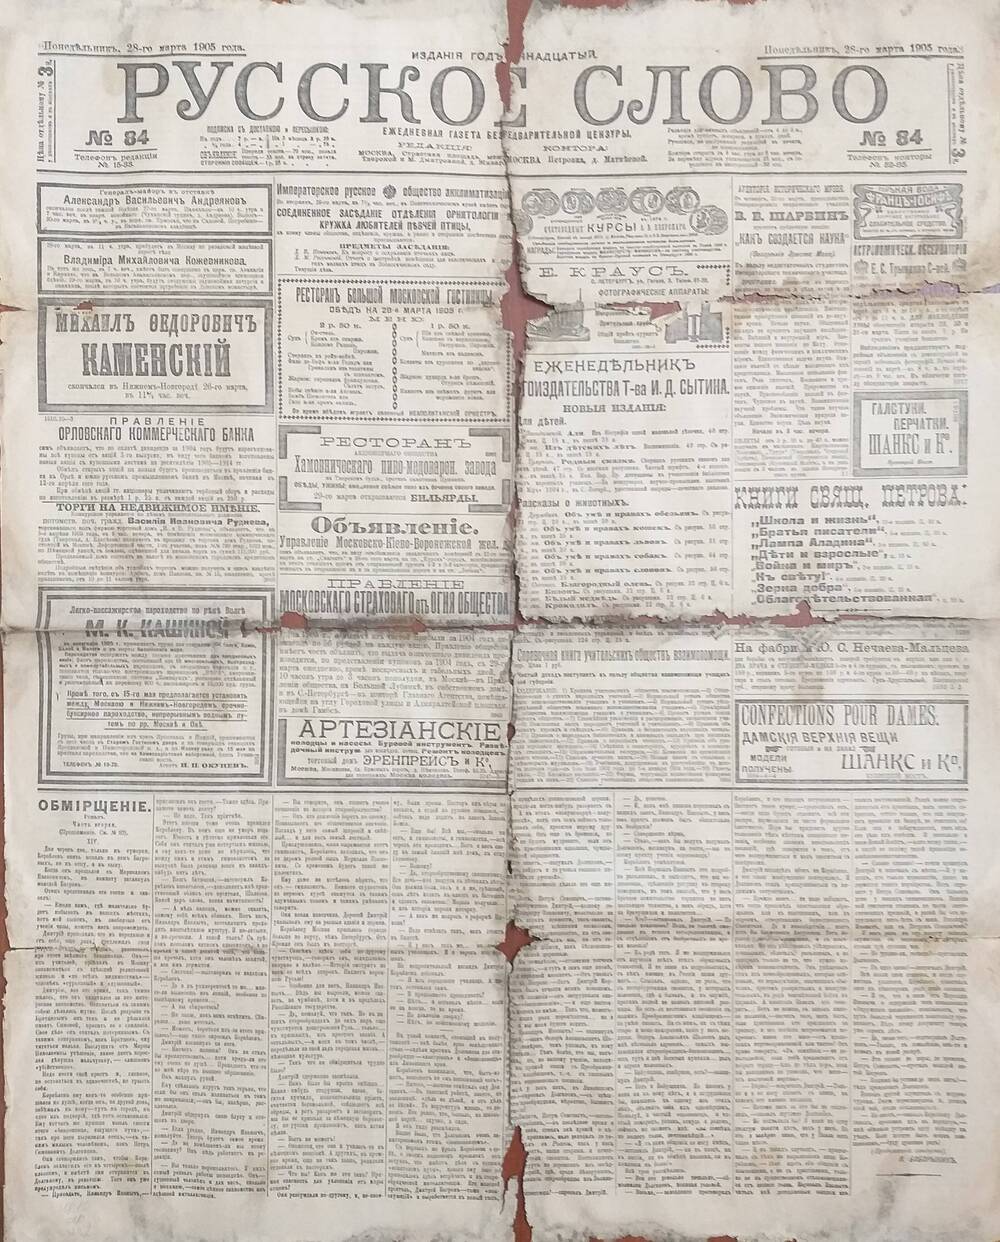 Газета Русское слово № 84 от 28.03.1905 года.